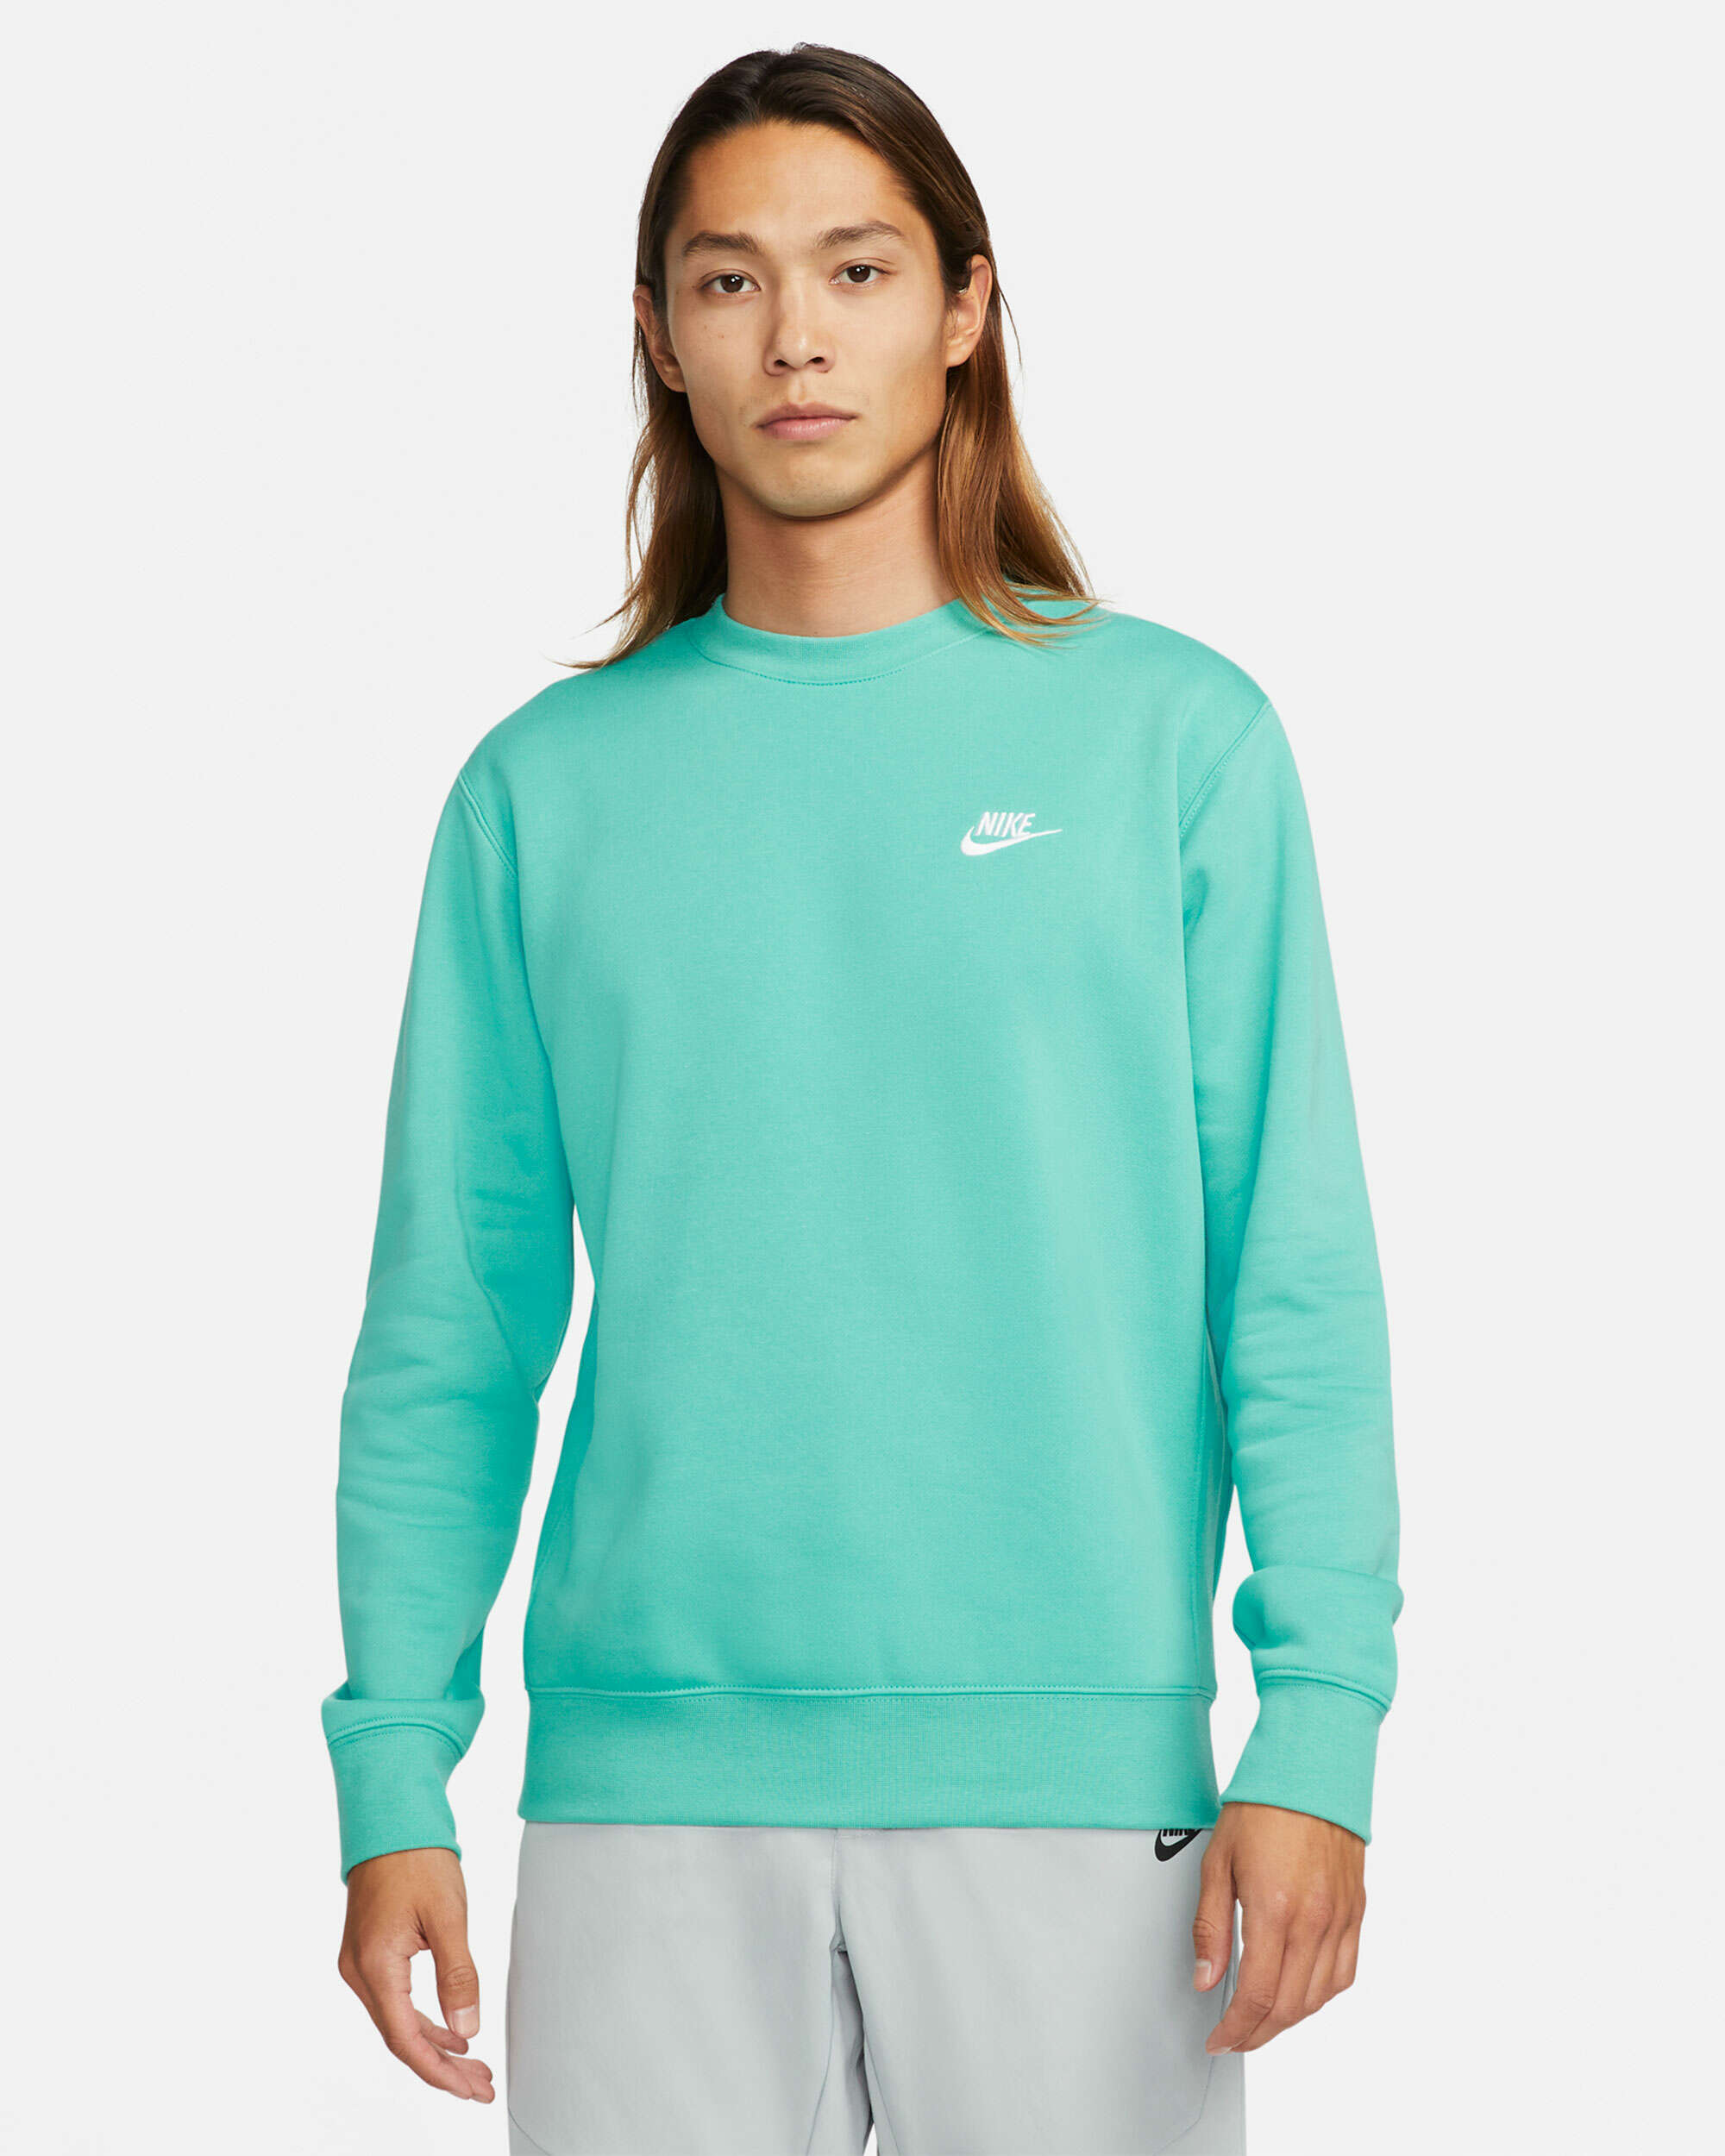 Nike Sportswear Club Men's Fleece Sweatshirt Turquoise BV2662-392| Buy ...